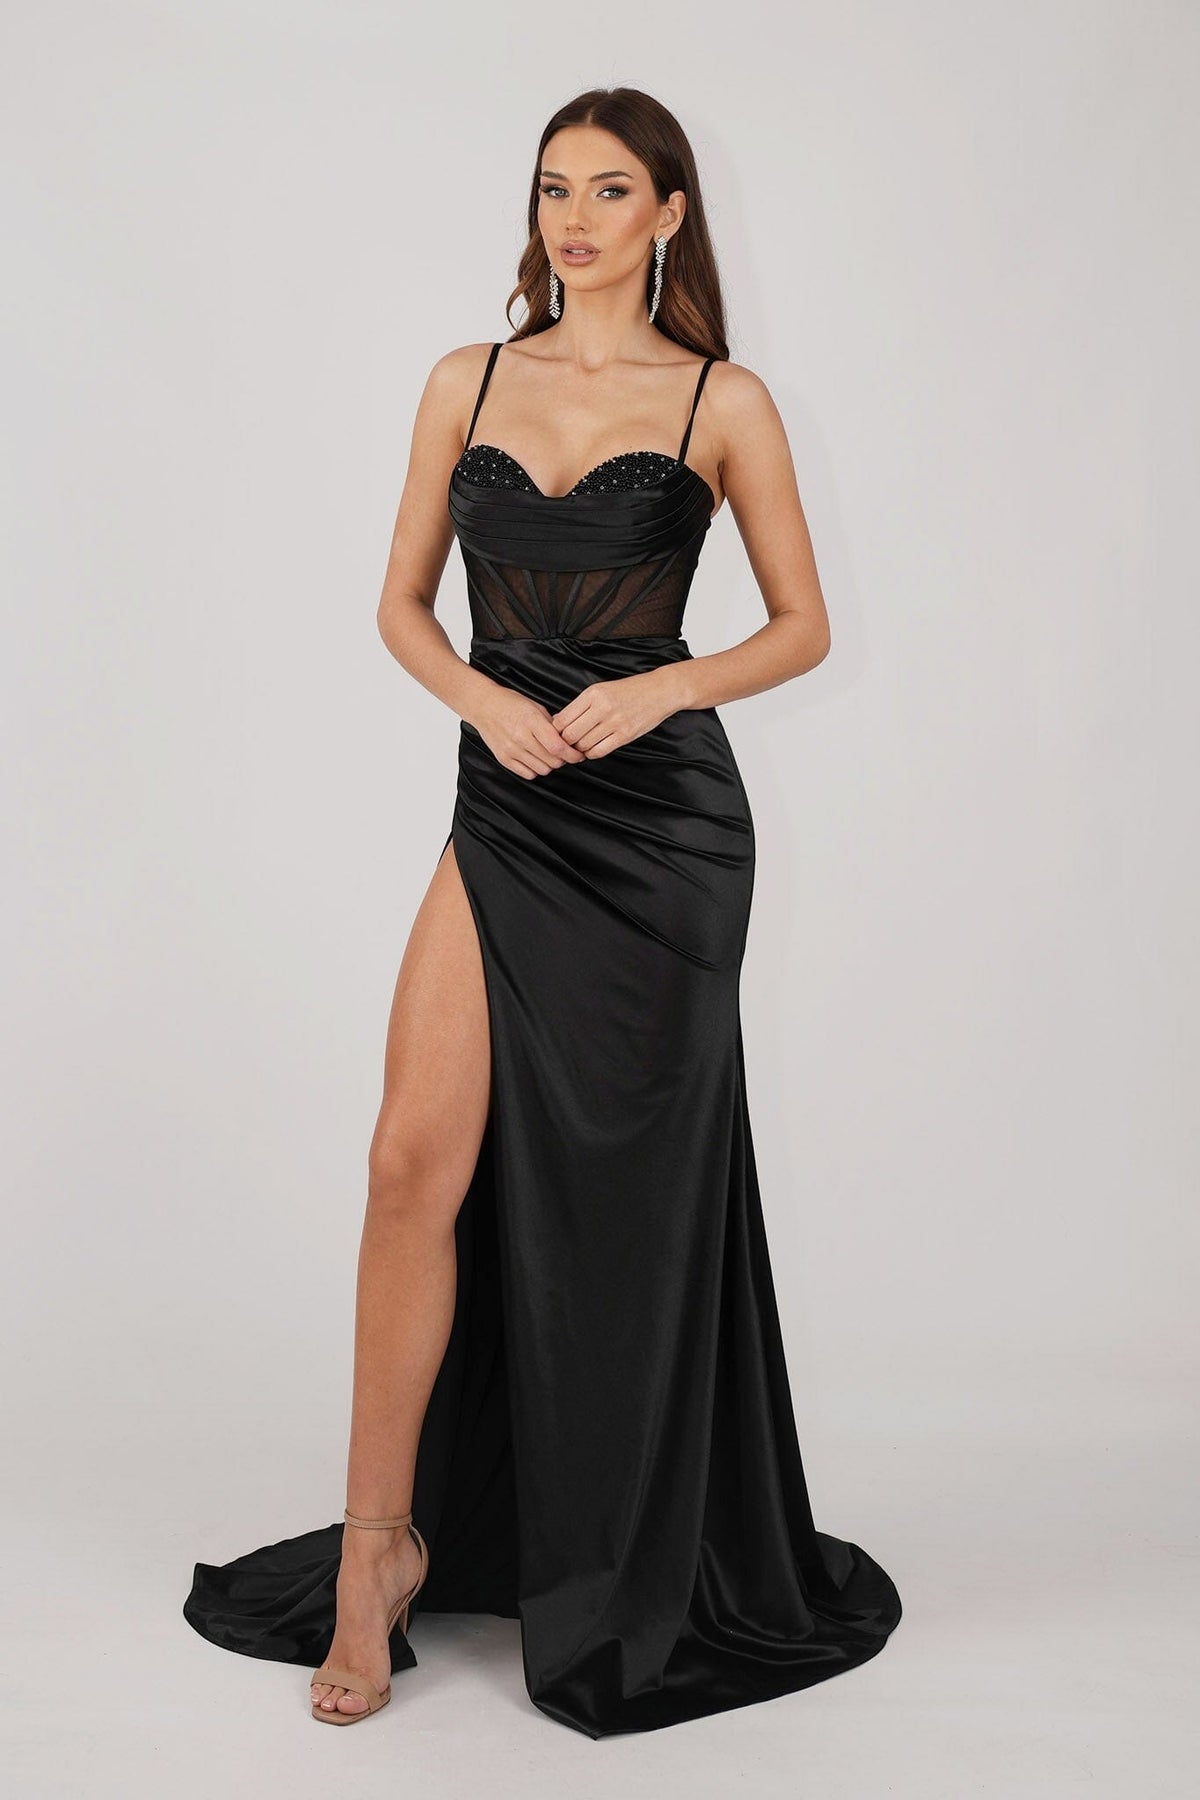 CRYSTAL Corset Gown - Black – Noodz Boutique